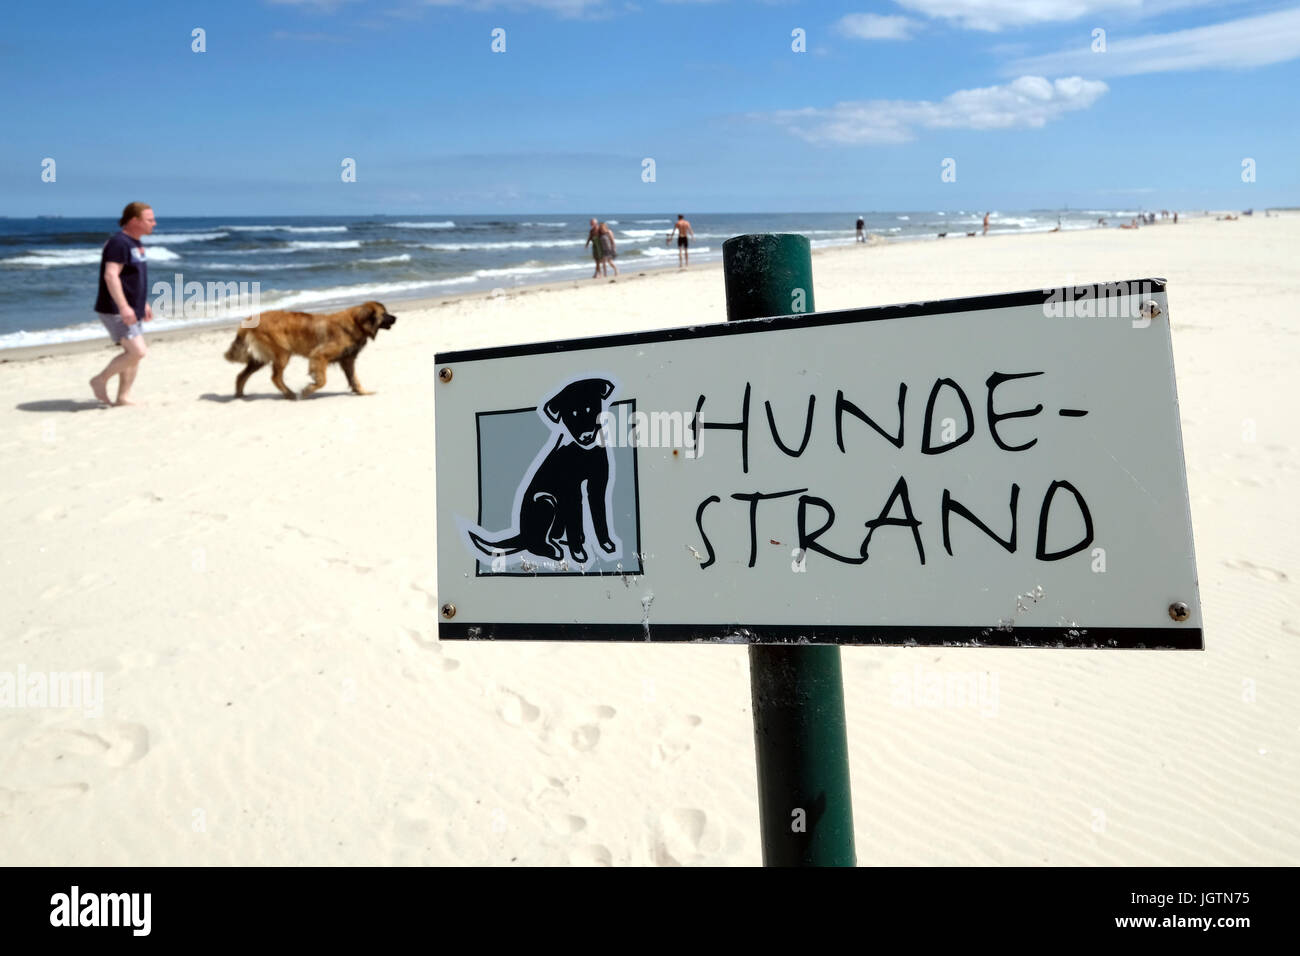 Schild steht "Hunde-Strand" (Hunde-Strand), Haustiere erlaubt Strand auf der Insel Spiekeroog, Deutschland Stockfoto